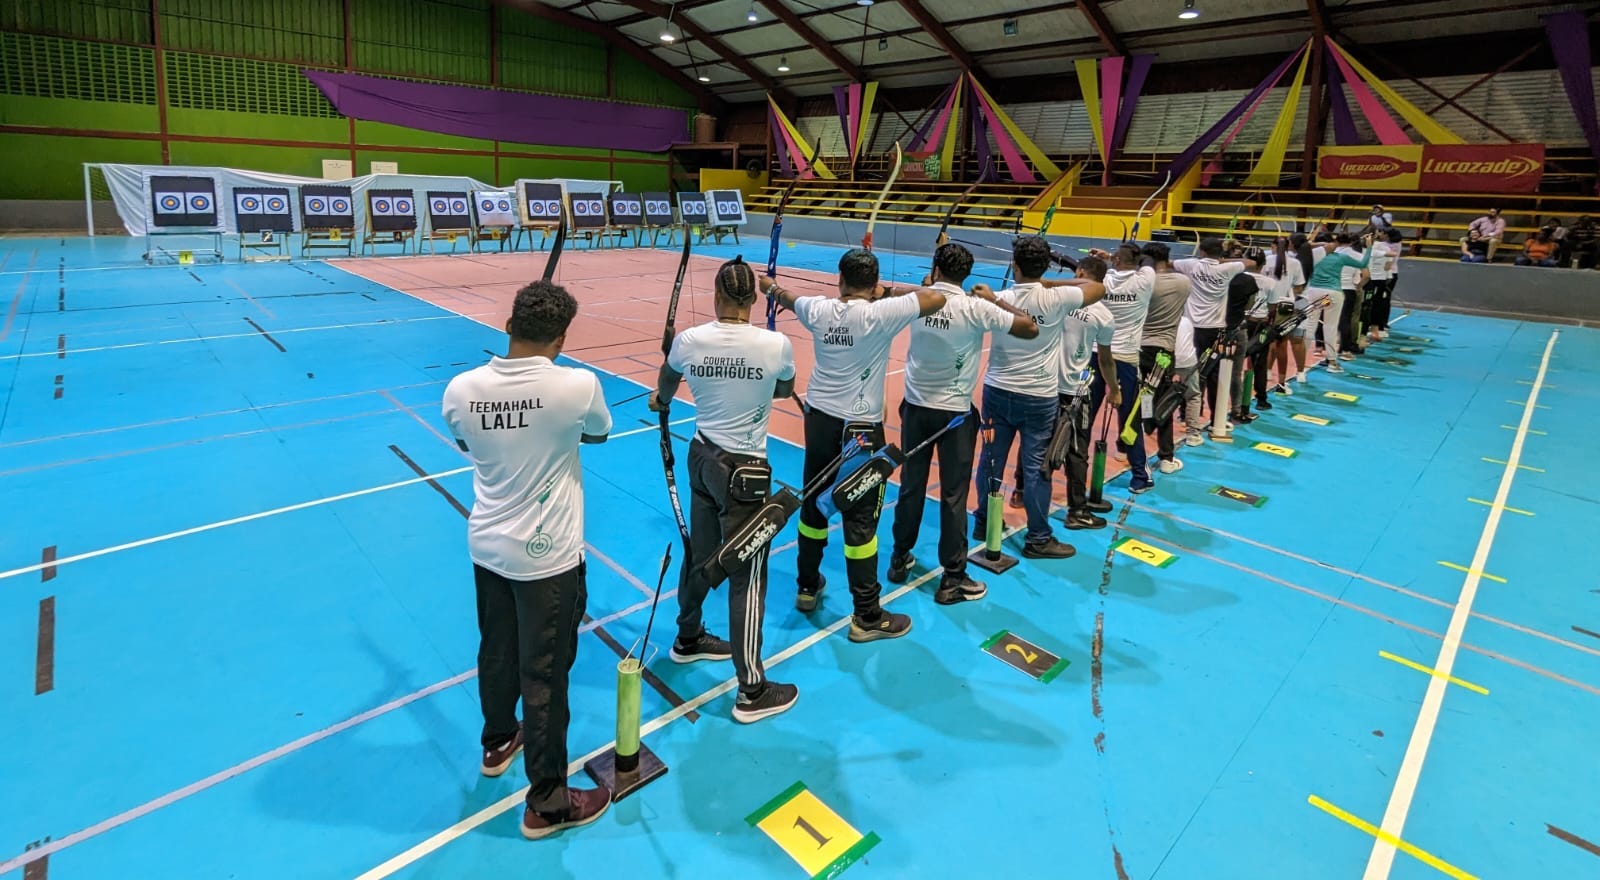 Archery Guyana's 2023 Year-End Indoor Open